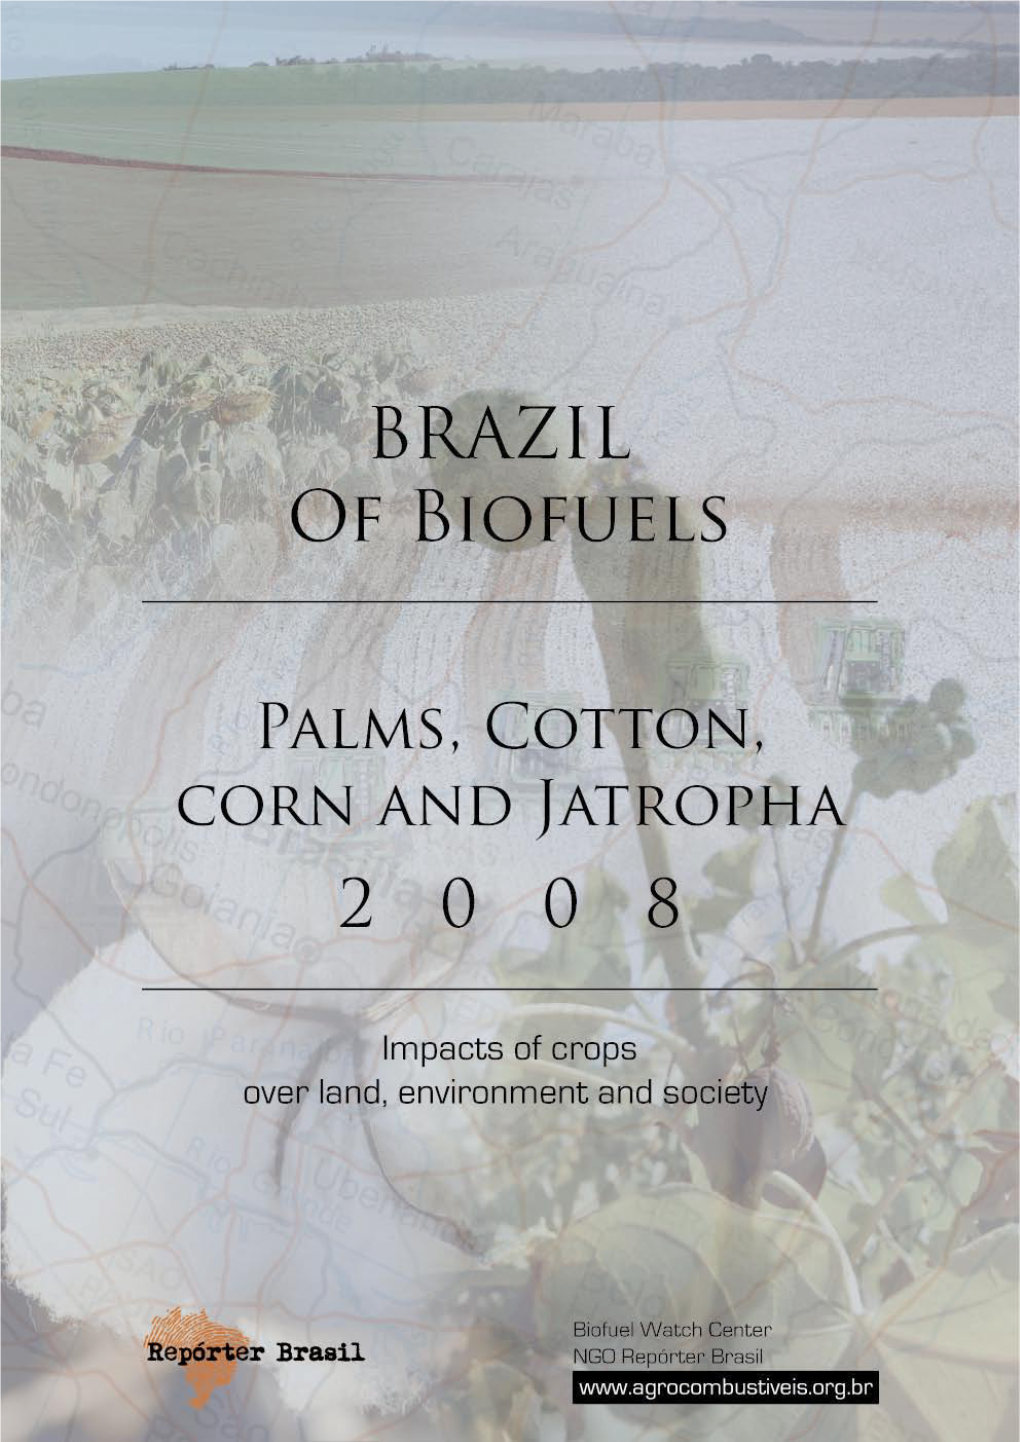 Brazil of Biofuels